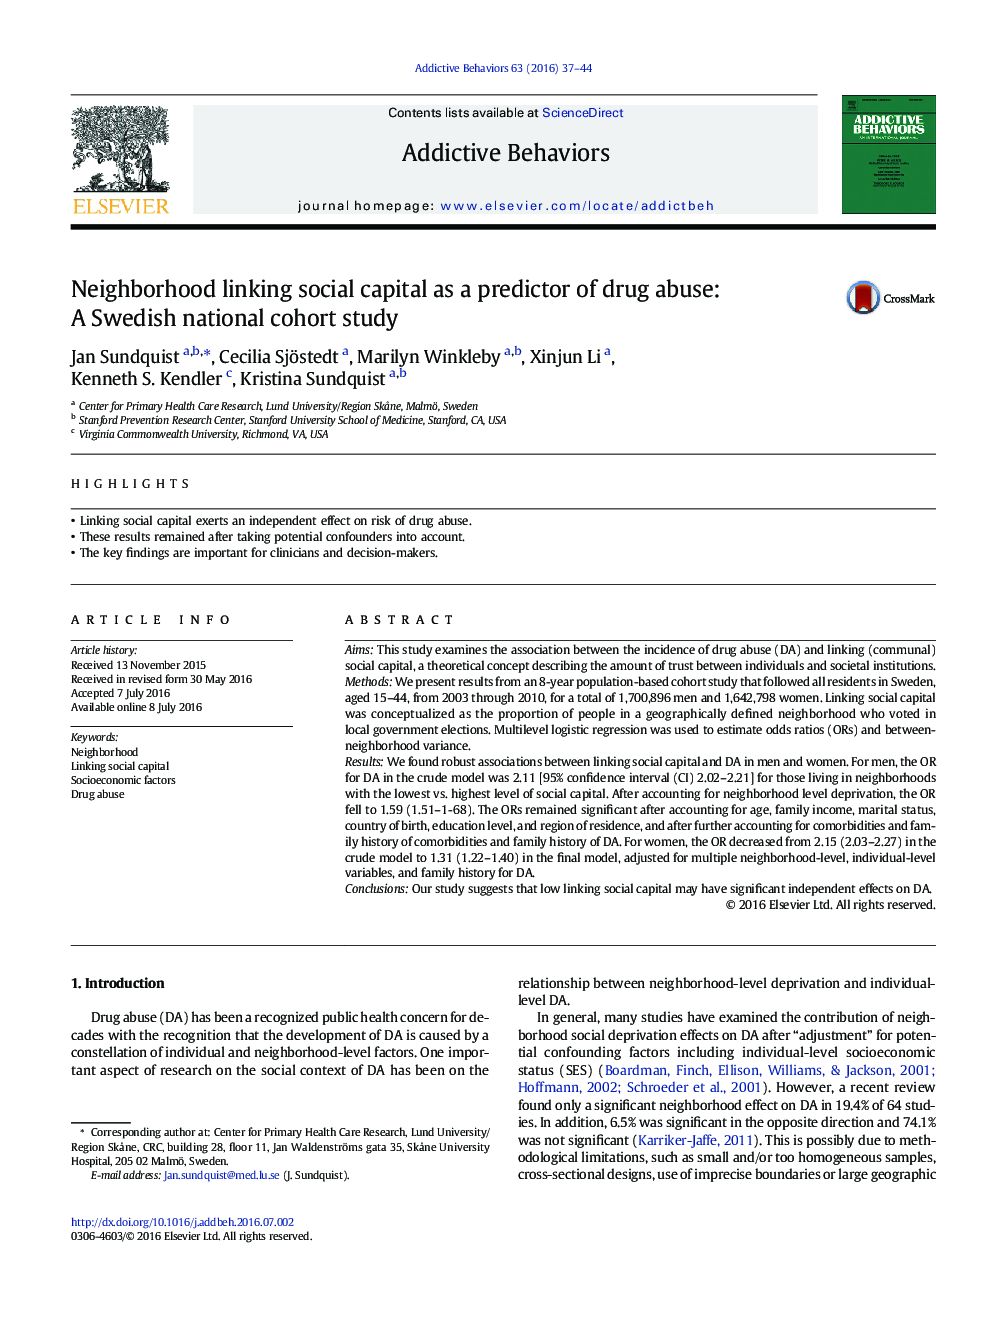  سرمایه اجتماعی ارتباط دهنده محله ای عنوان پیش بینی کننده استفاده از مواد مخدر: مطالعه همگروهی ملی سوئد